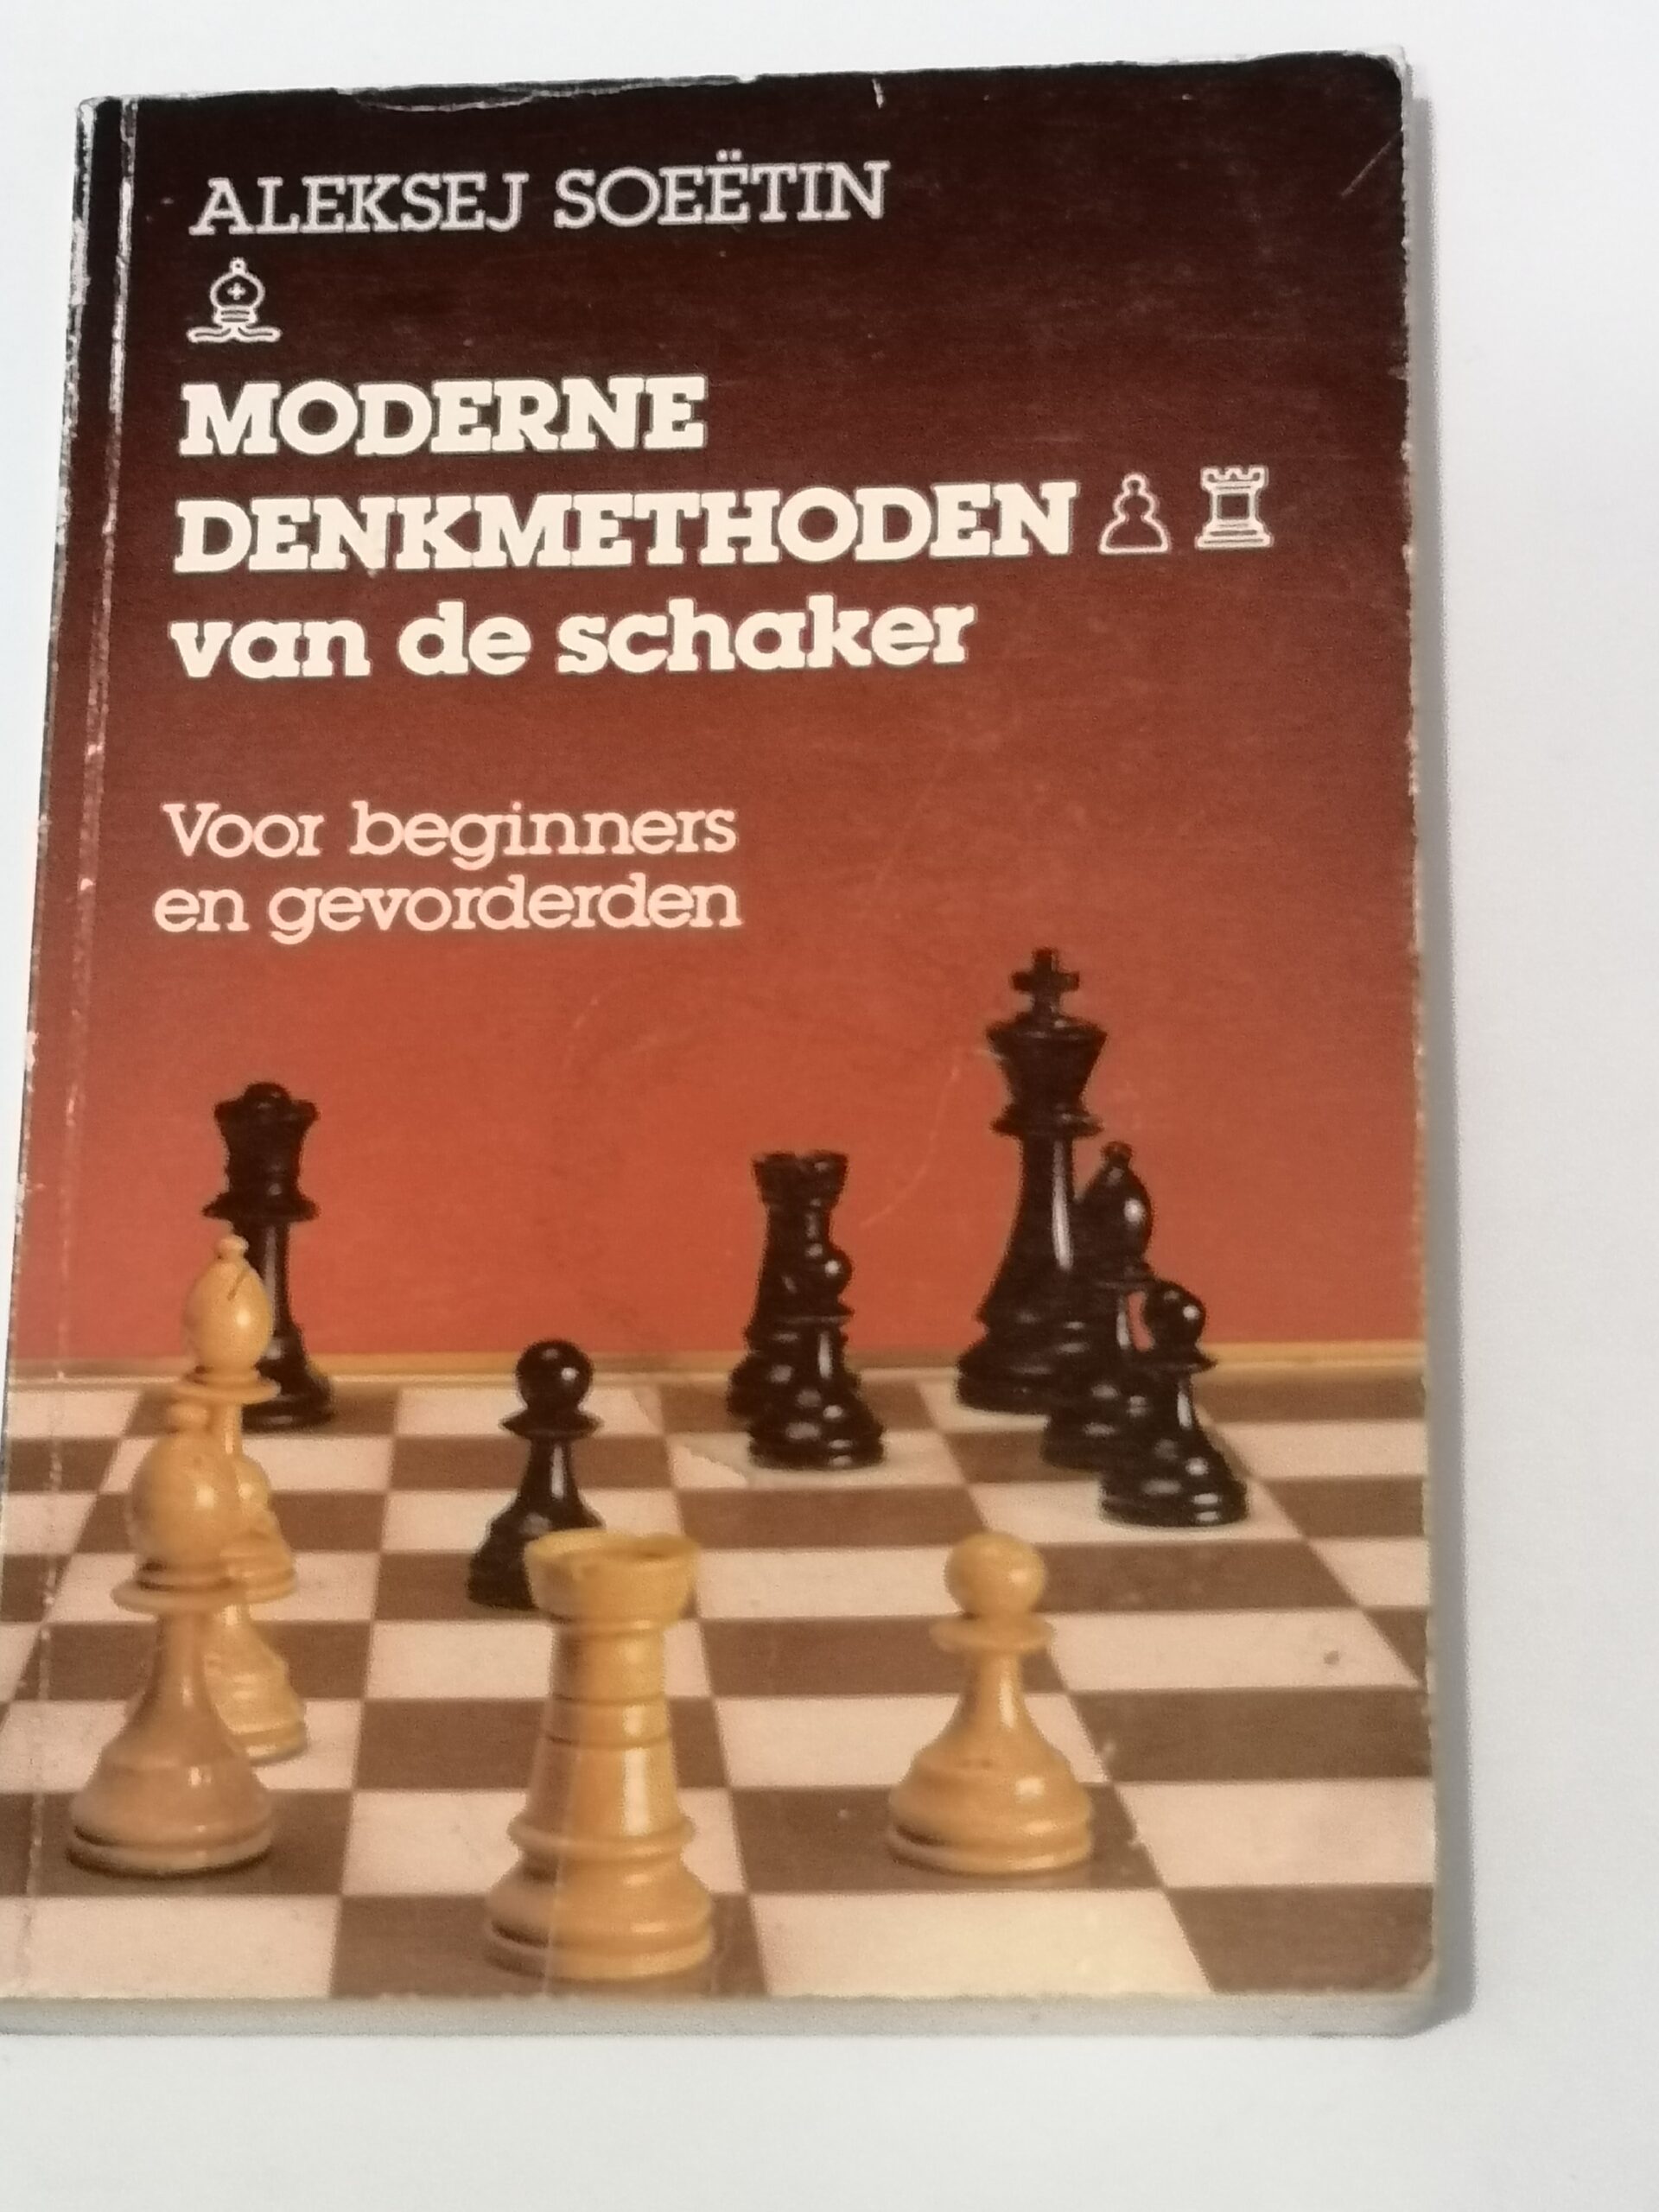 747# Moderne Denkmethothen van de schaker (A.Suetin)